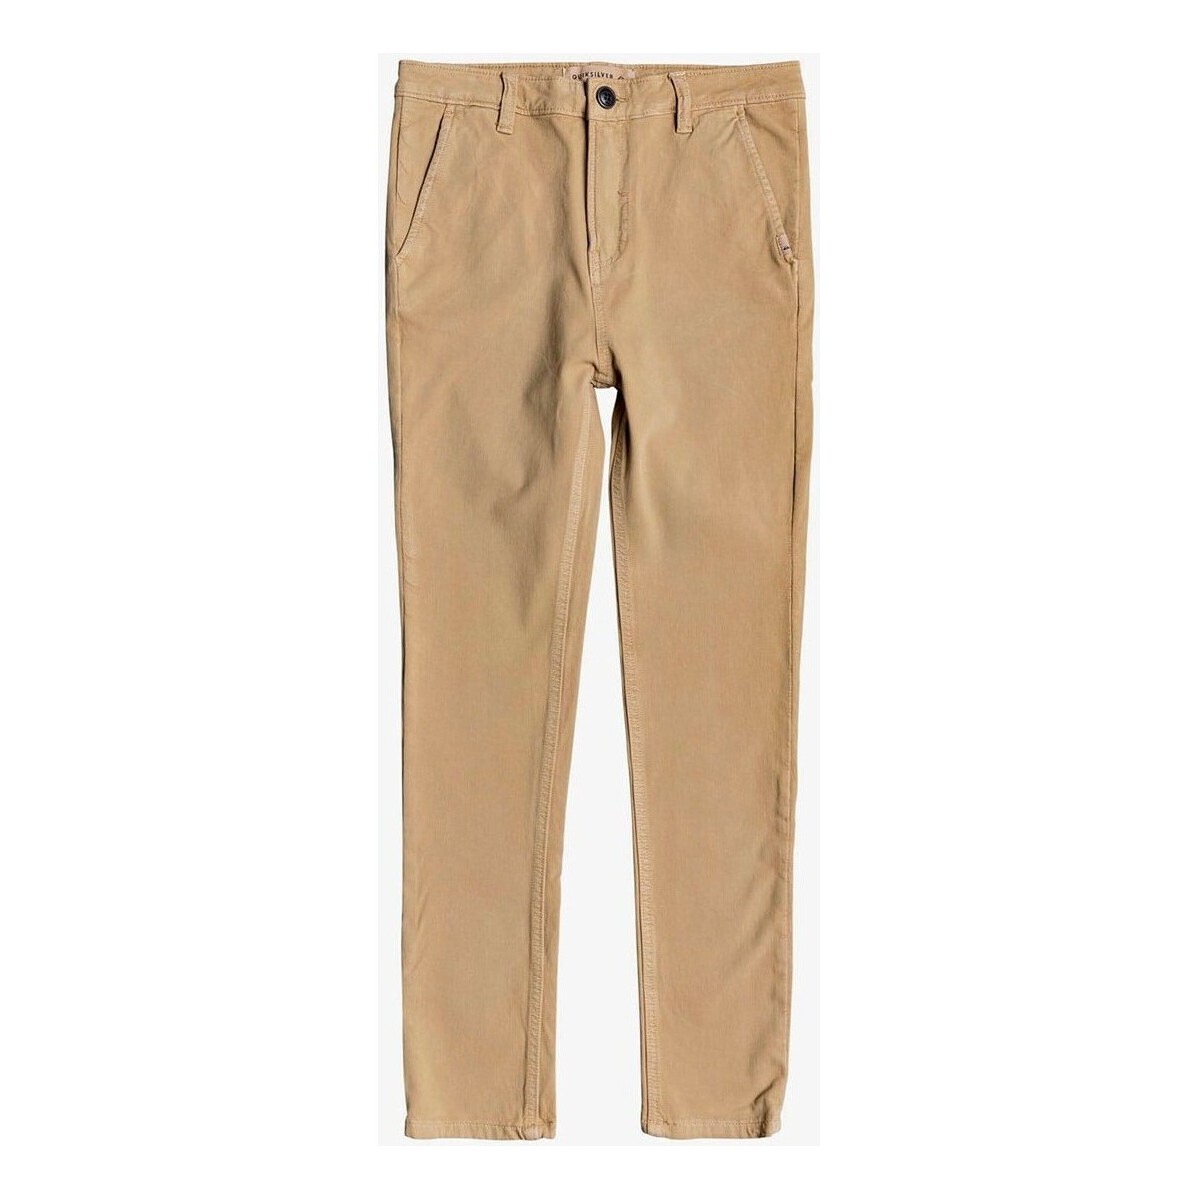 Vêtements Garçon Jeans Quiksilver Junior - Pantalon - beige Beige